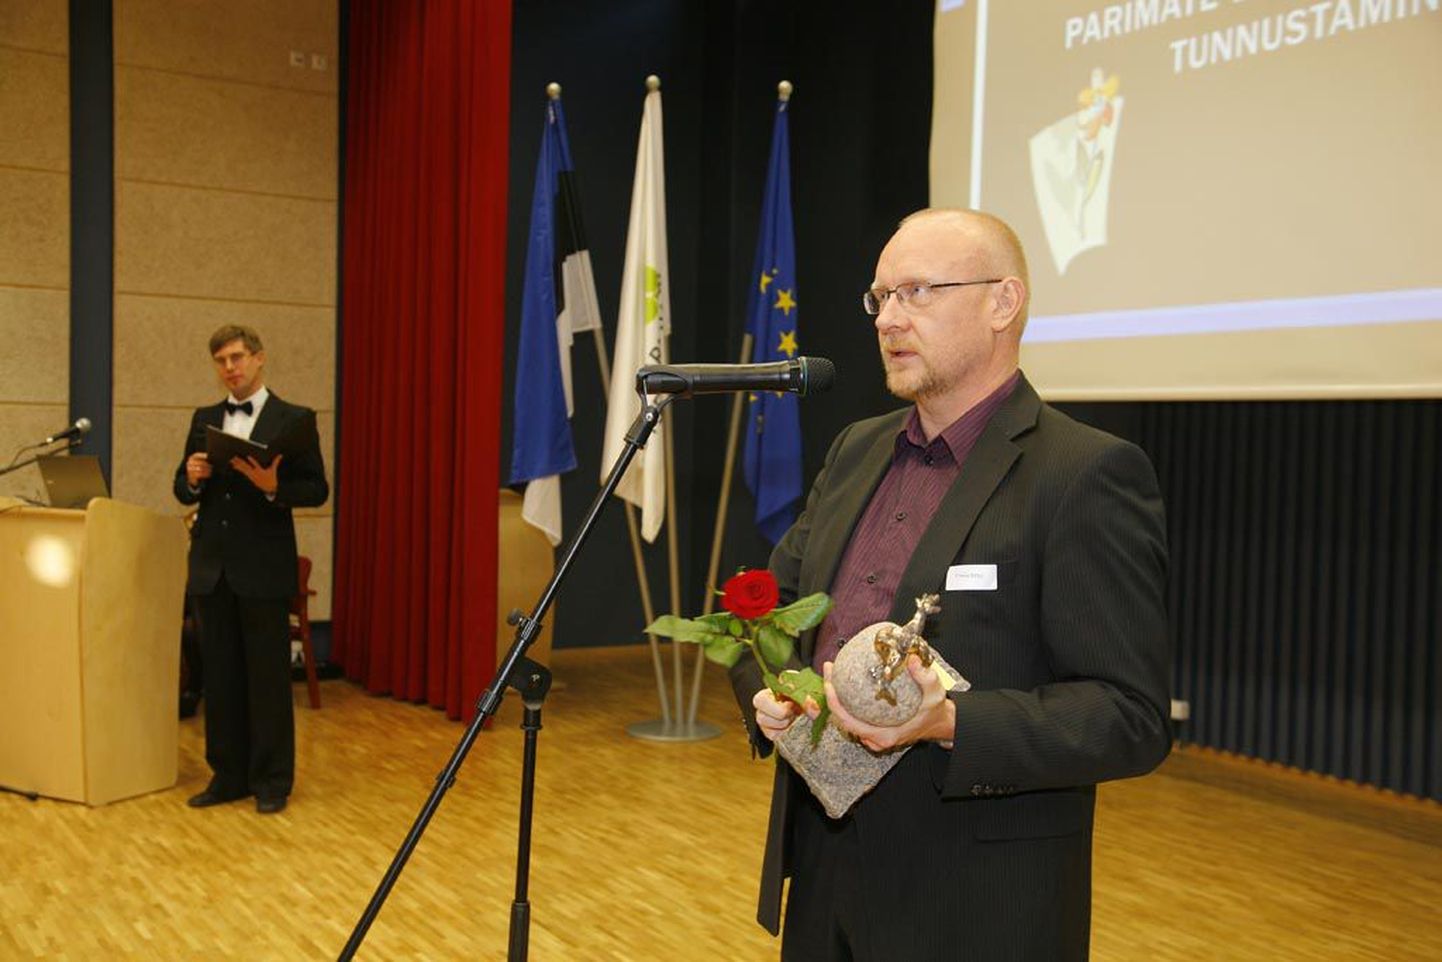 Eesti kaubandus-tööstuskoja Pärnu esindus andis esimest korda välja vastutustundliku ettevõtja auhinna, mille pälvis Fein-Elast Estonia juhataja Urmas Mägi.